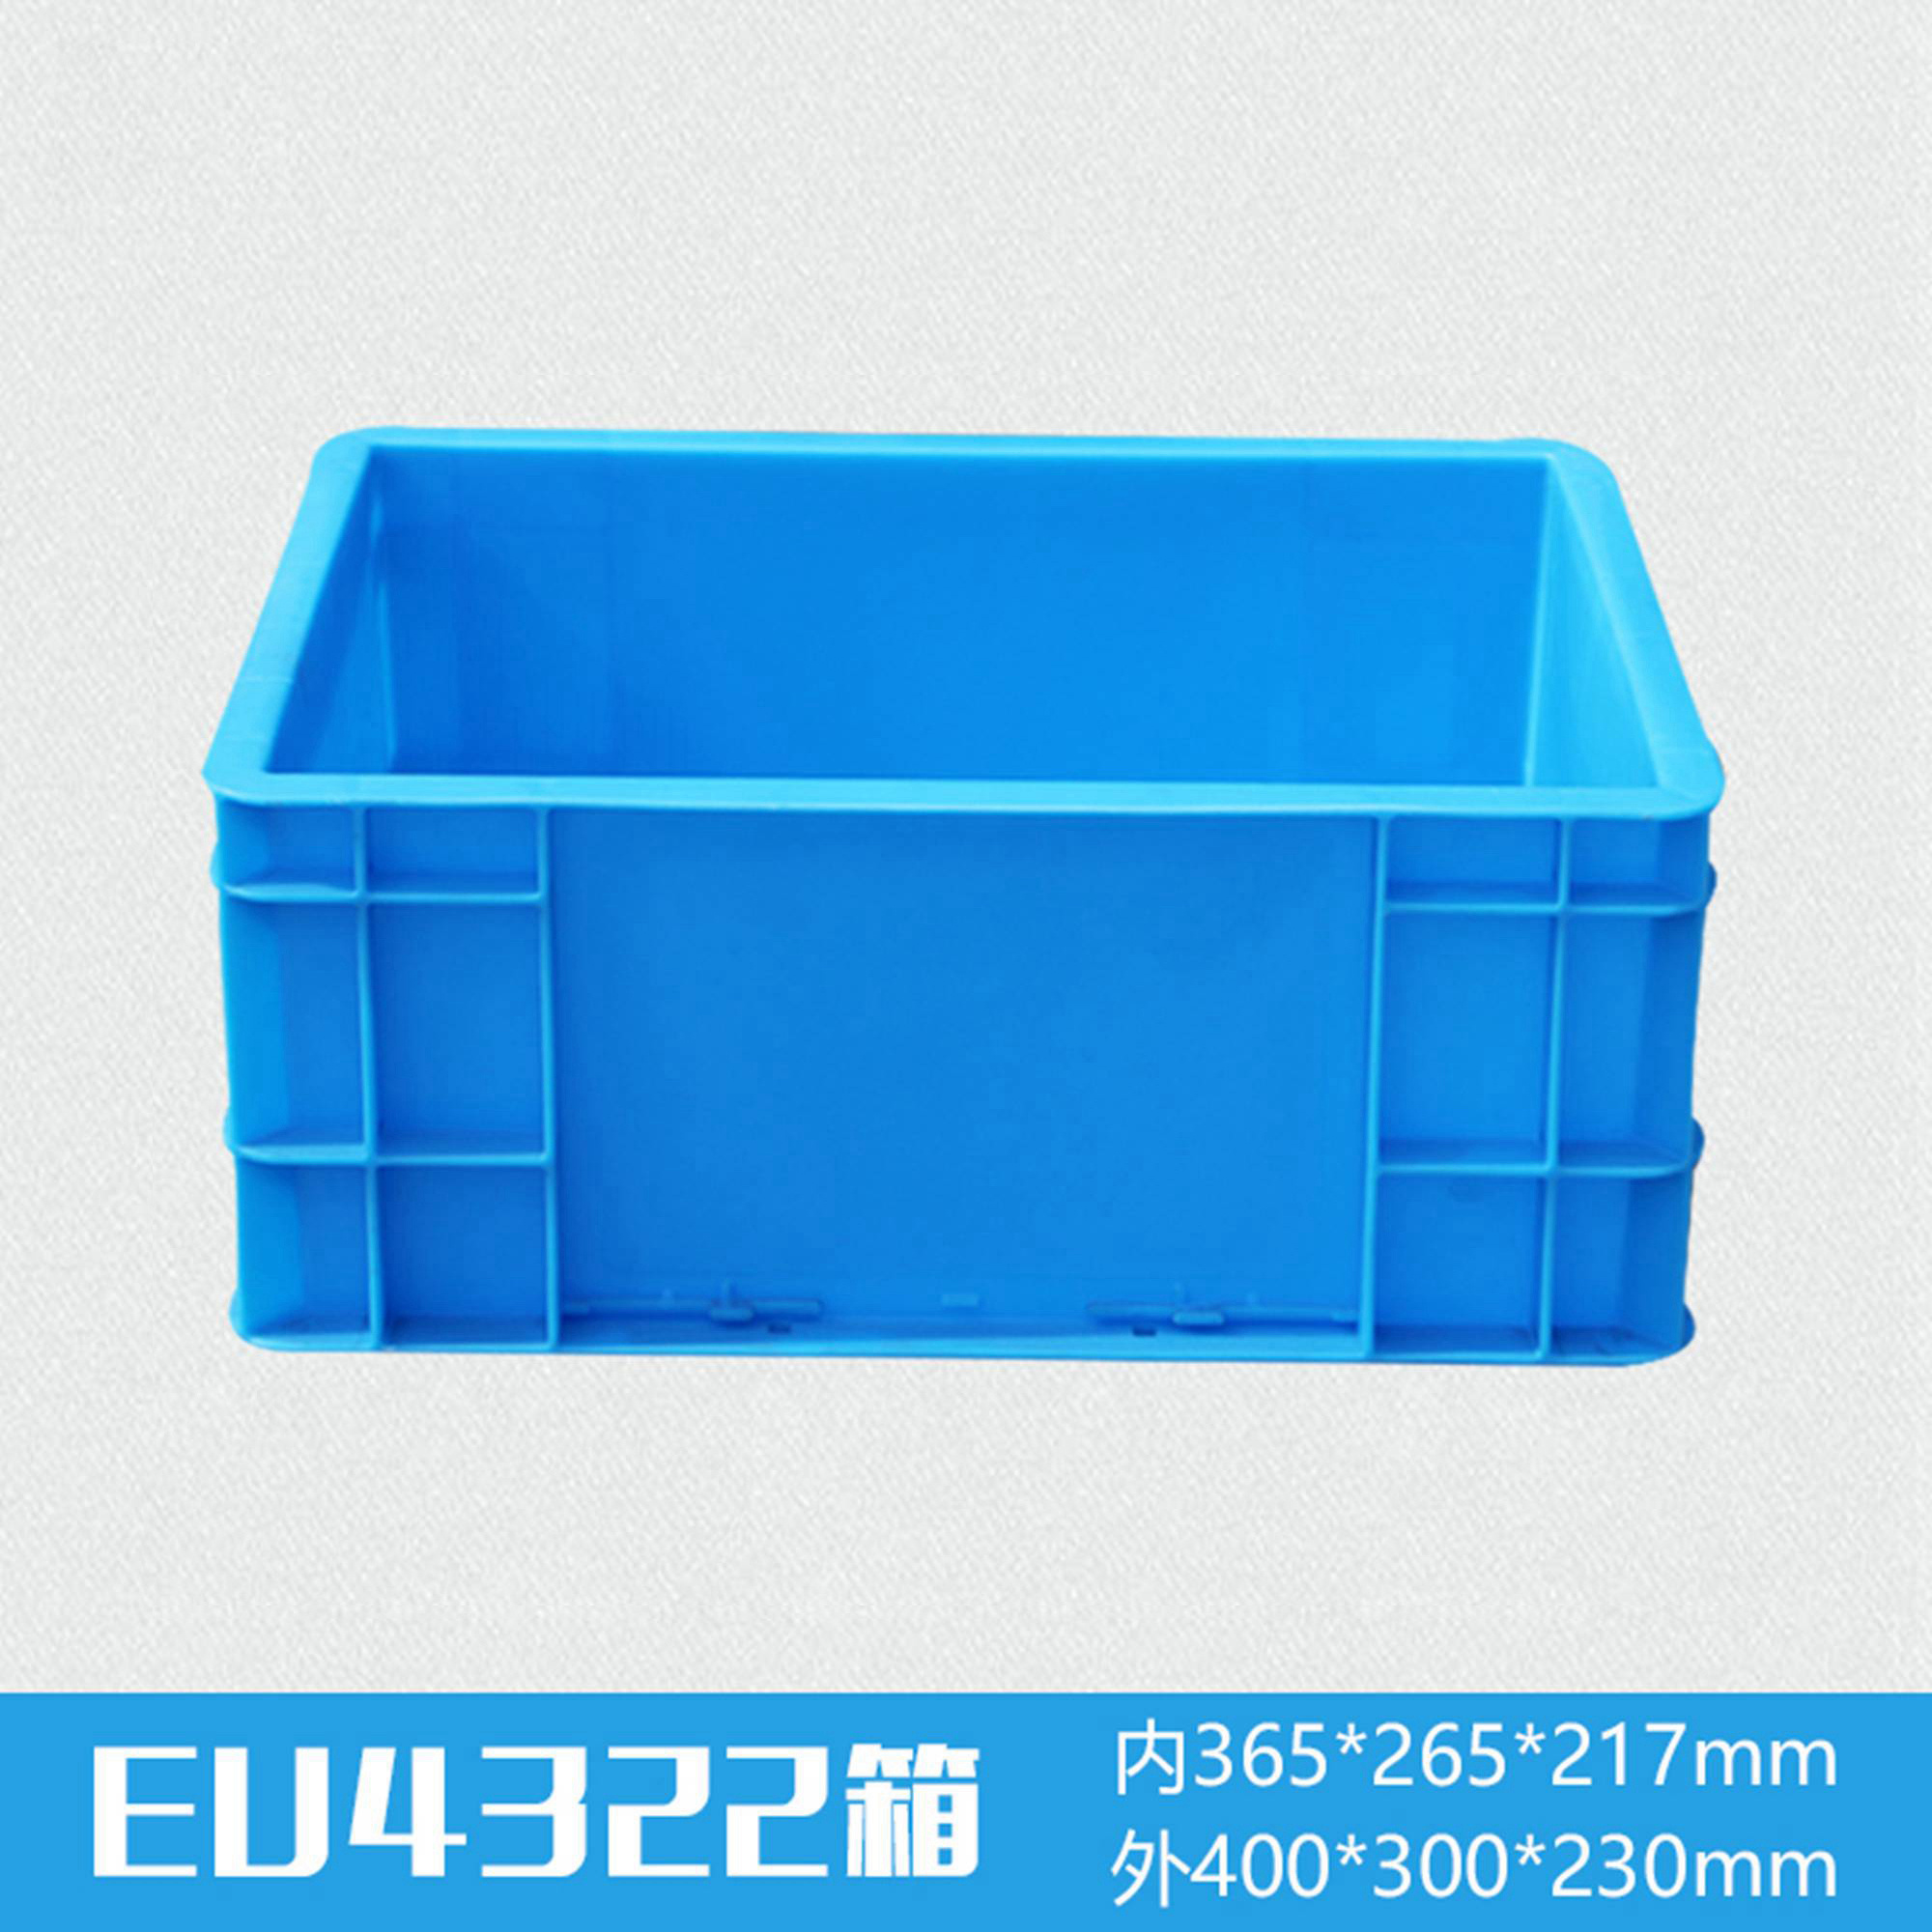 轩盛塑业EU4322塑料物流箱